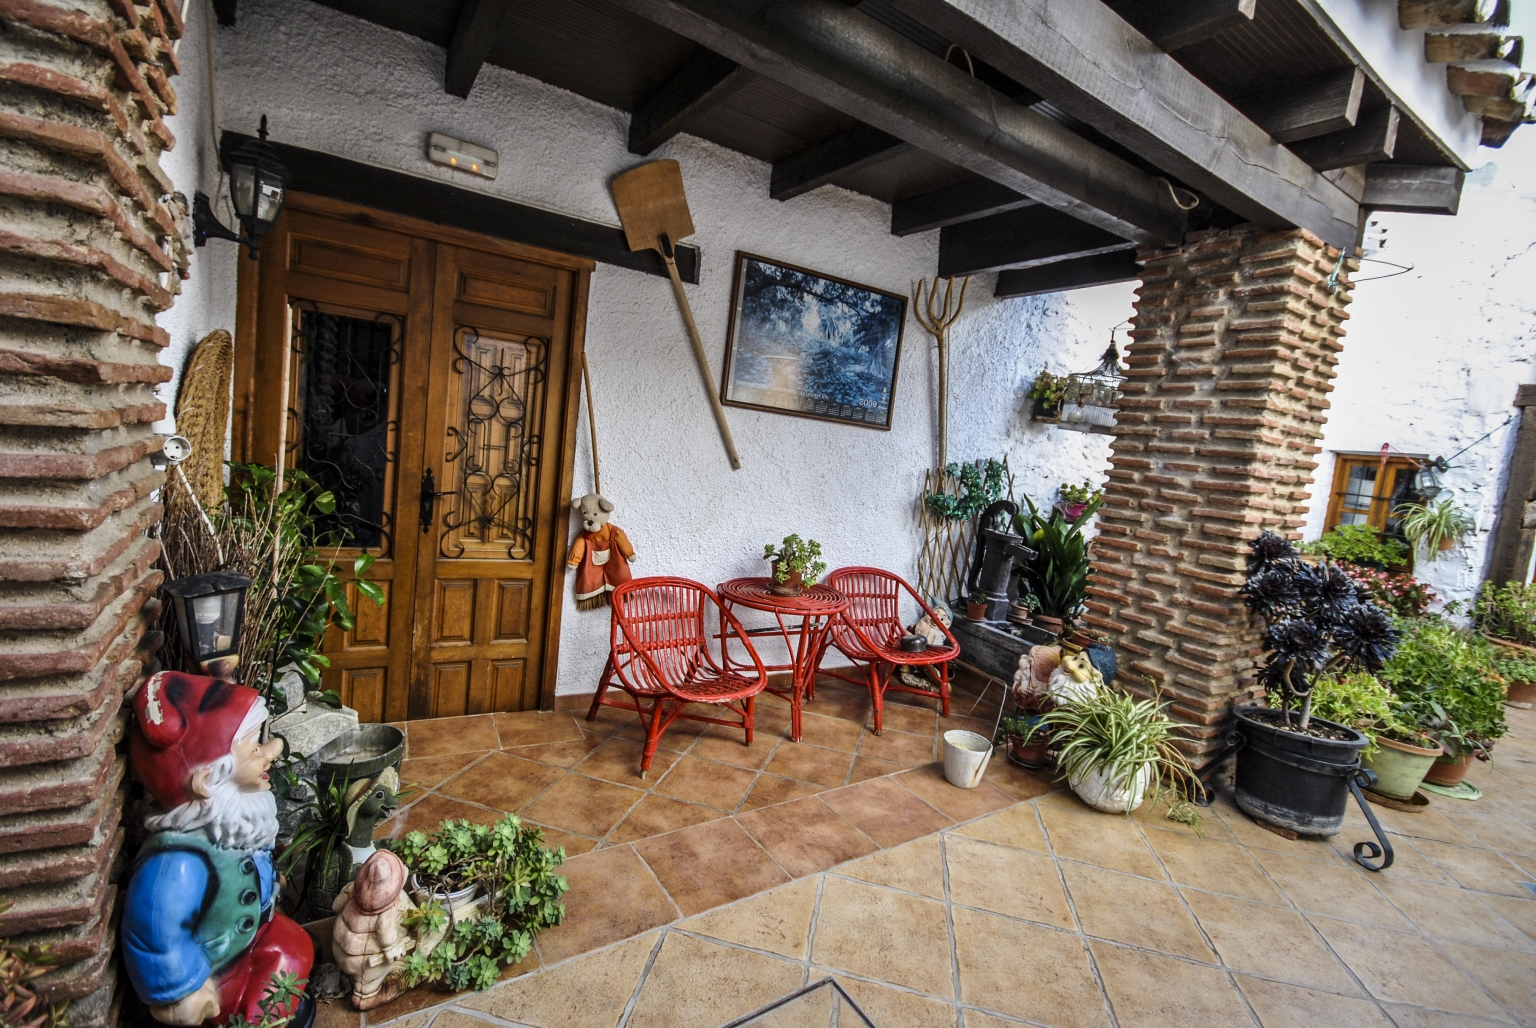 Tracionales patios interiores andaluces decorados con macetas y flores, en el complejo turístico Cortijo Las Monjas, en las montañas de la Alta Axarquía malagueña. Andalucia. Todo su esplendor en Primavera